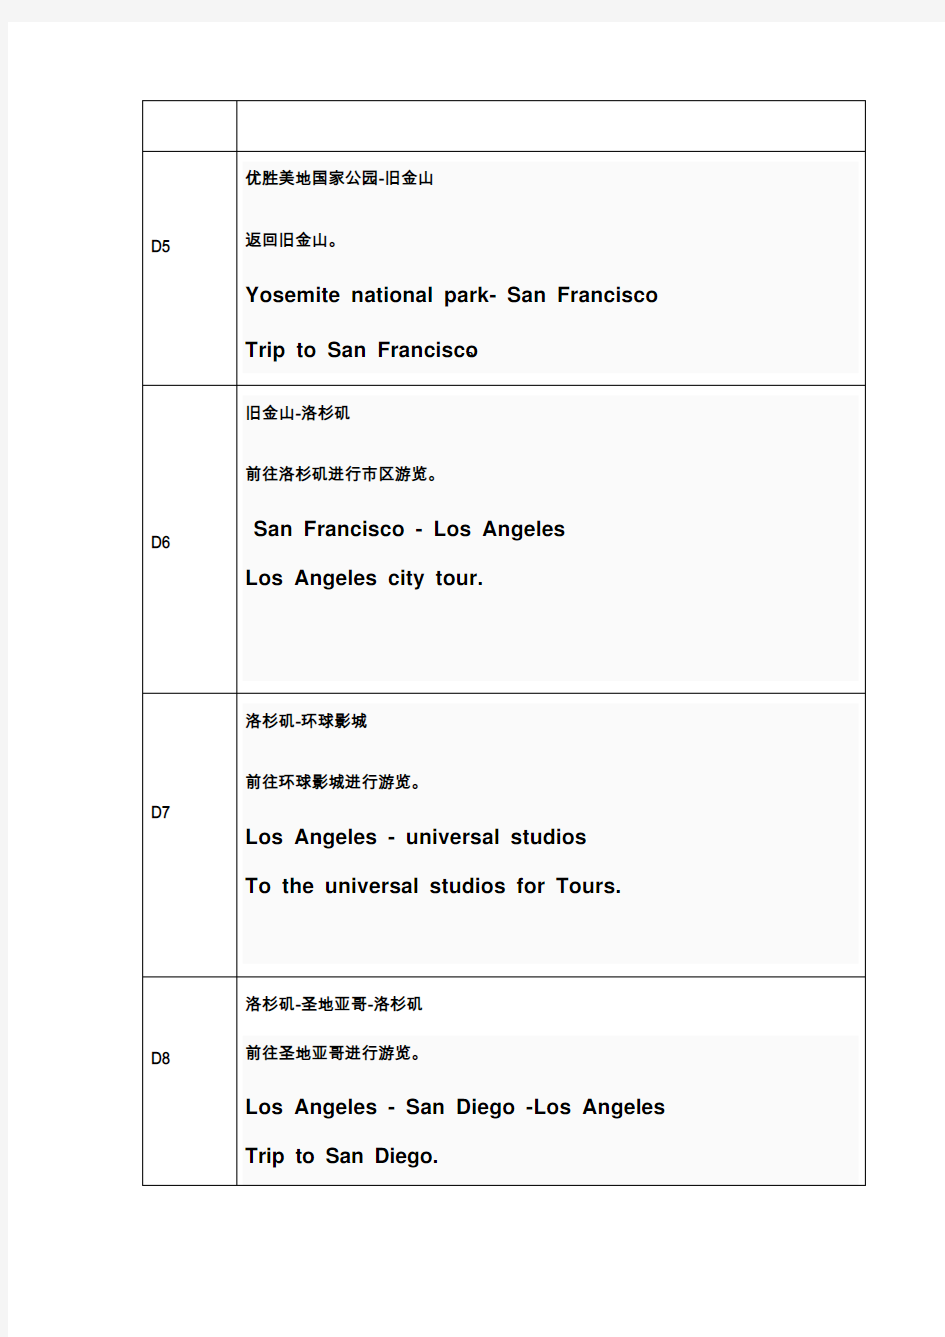 赴美签证行程单模板(西部-洛杉矶、旧金山)